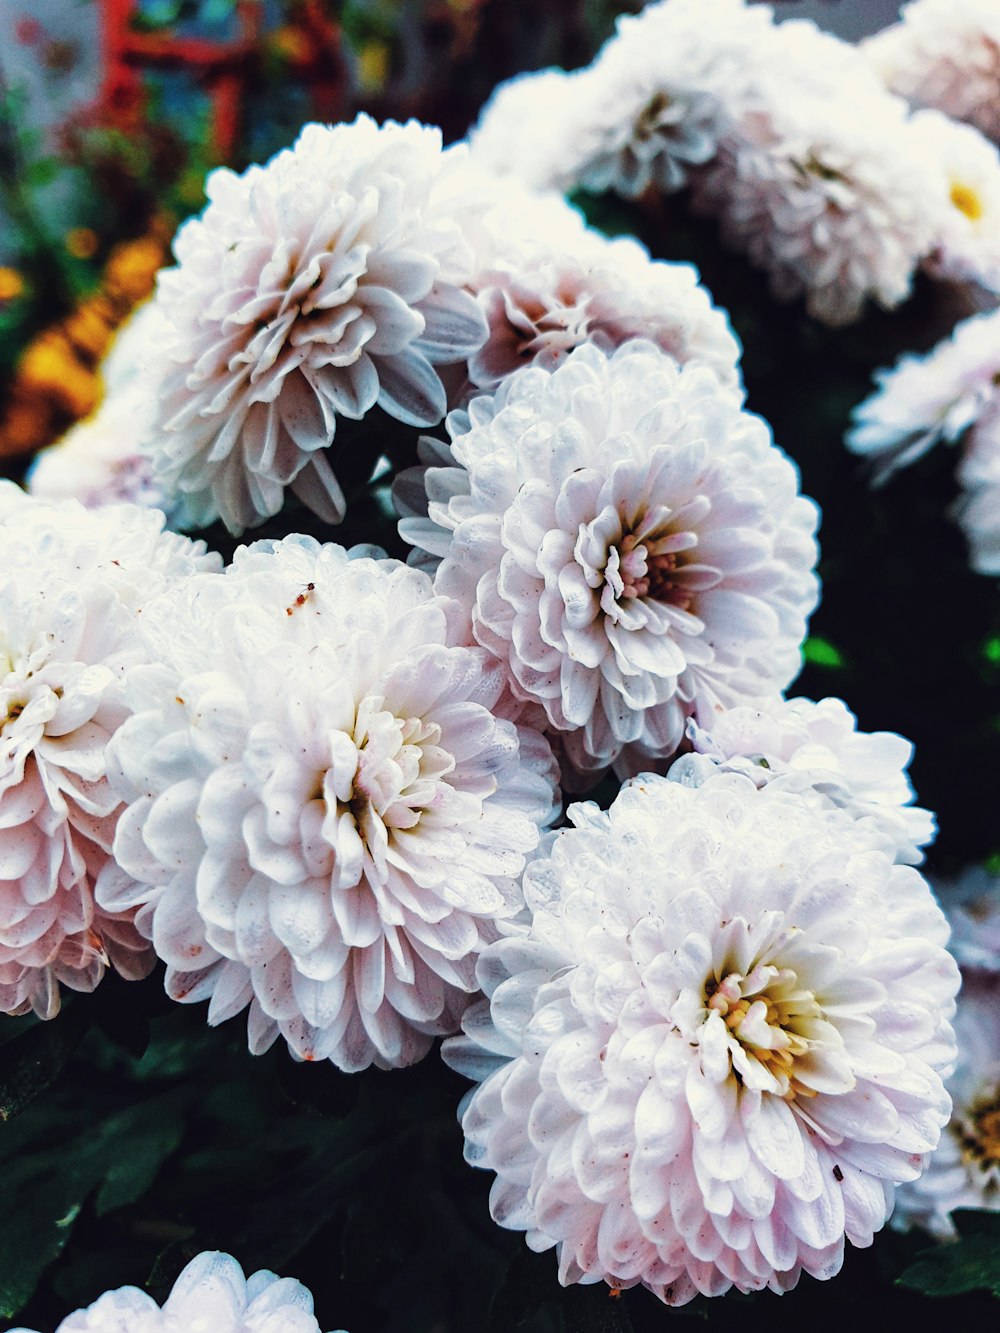 macro photography of white chrysanthemum flowers